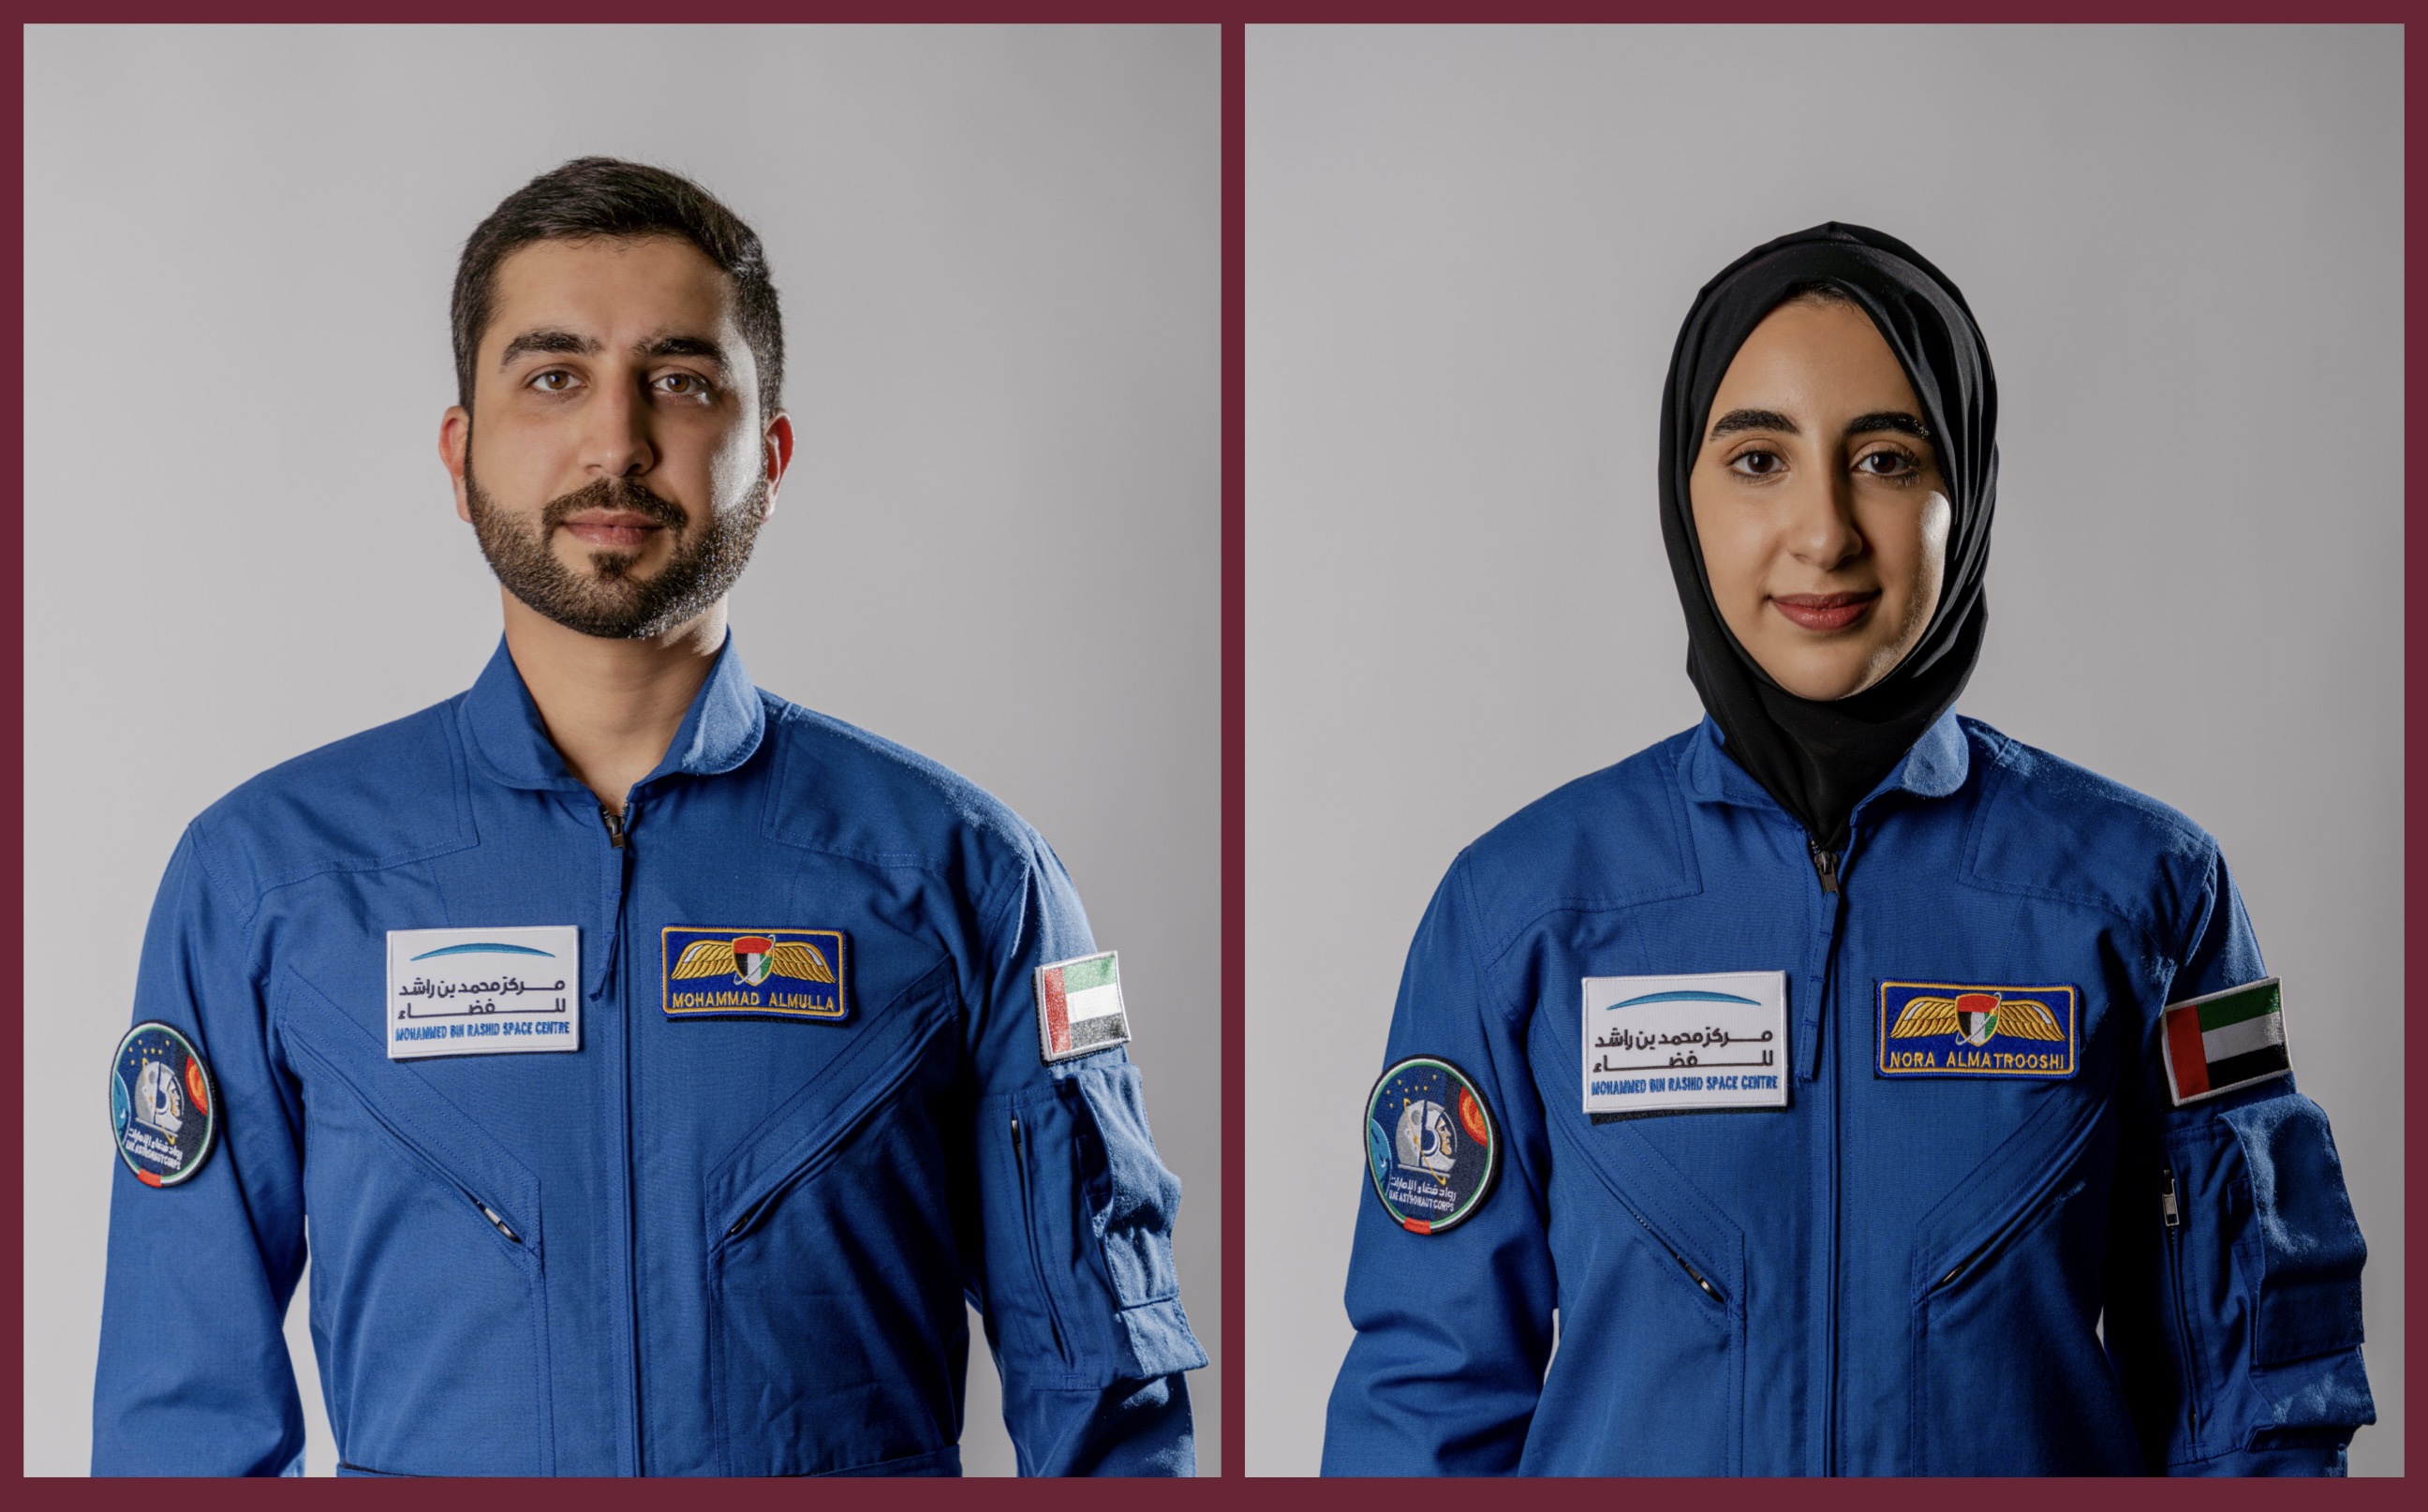 الدفعة الثانية من برنامج الإمارات لرواد الفضاء يبدأون تدريباتهم قبل انطلاقهم إلى ناسا